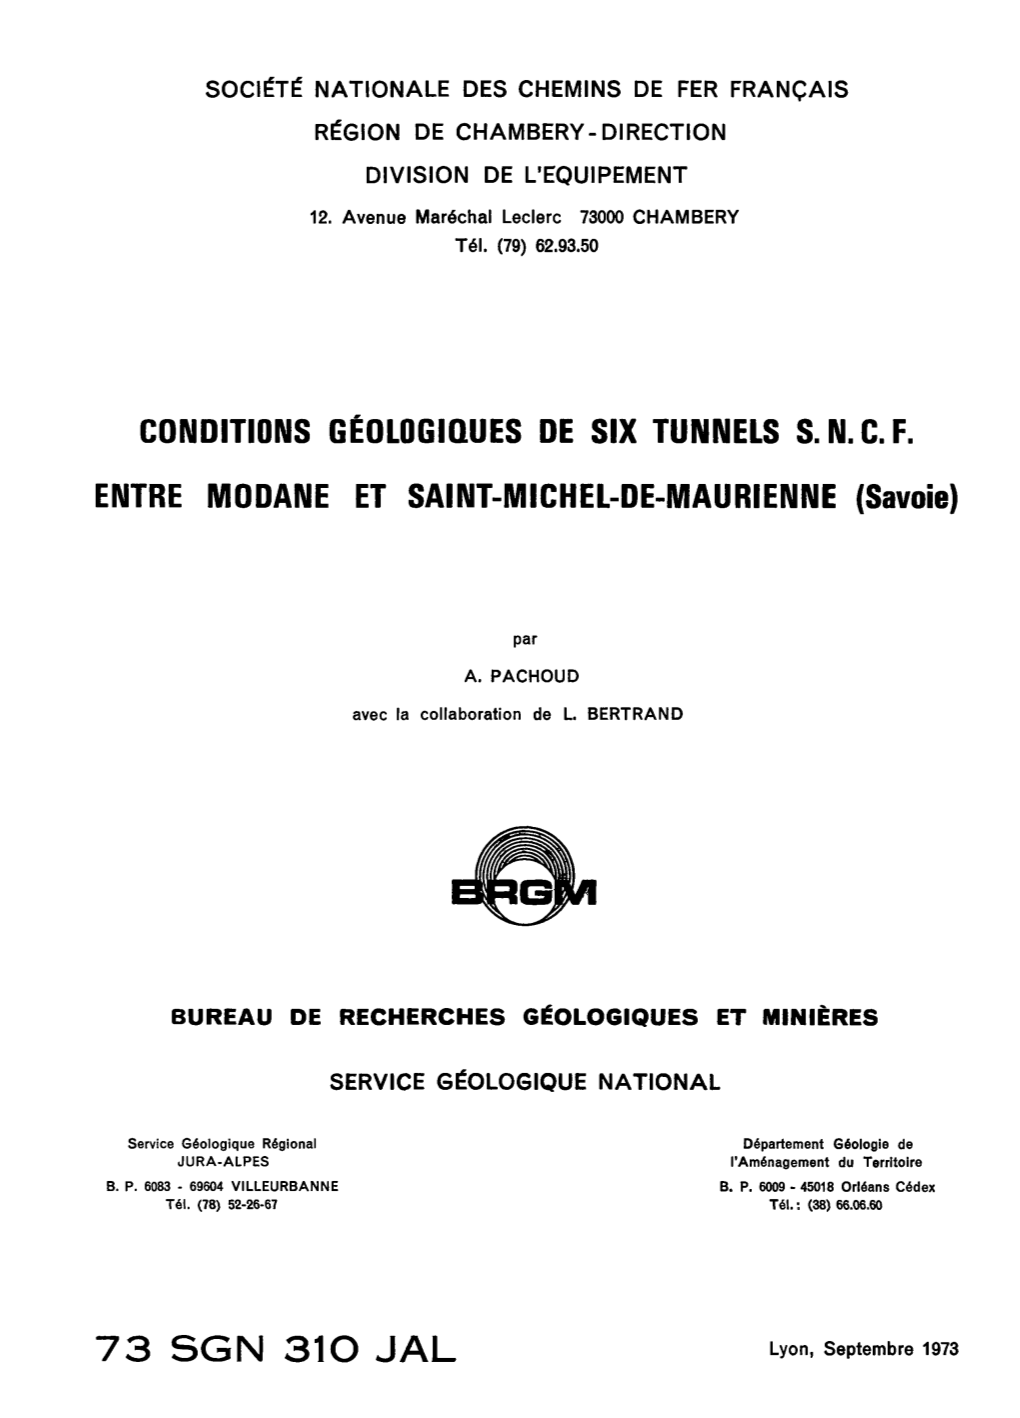 CONDITIONS GÉOLOGIQUES DE SIX TUNNELS S.N.C.F. ENTRE MODANE ET SAINT-MICHEL-DE-MAURIENNE (Savoie) 73 SGN 31O